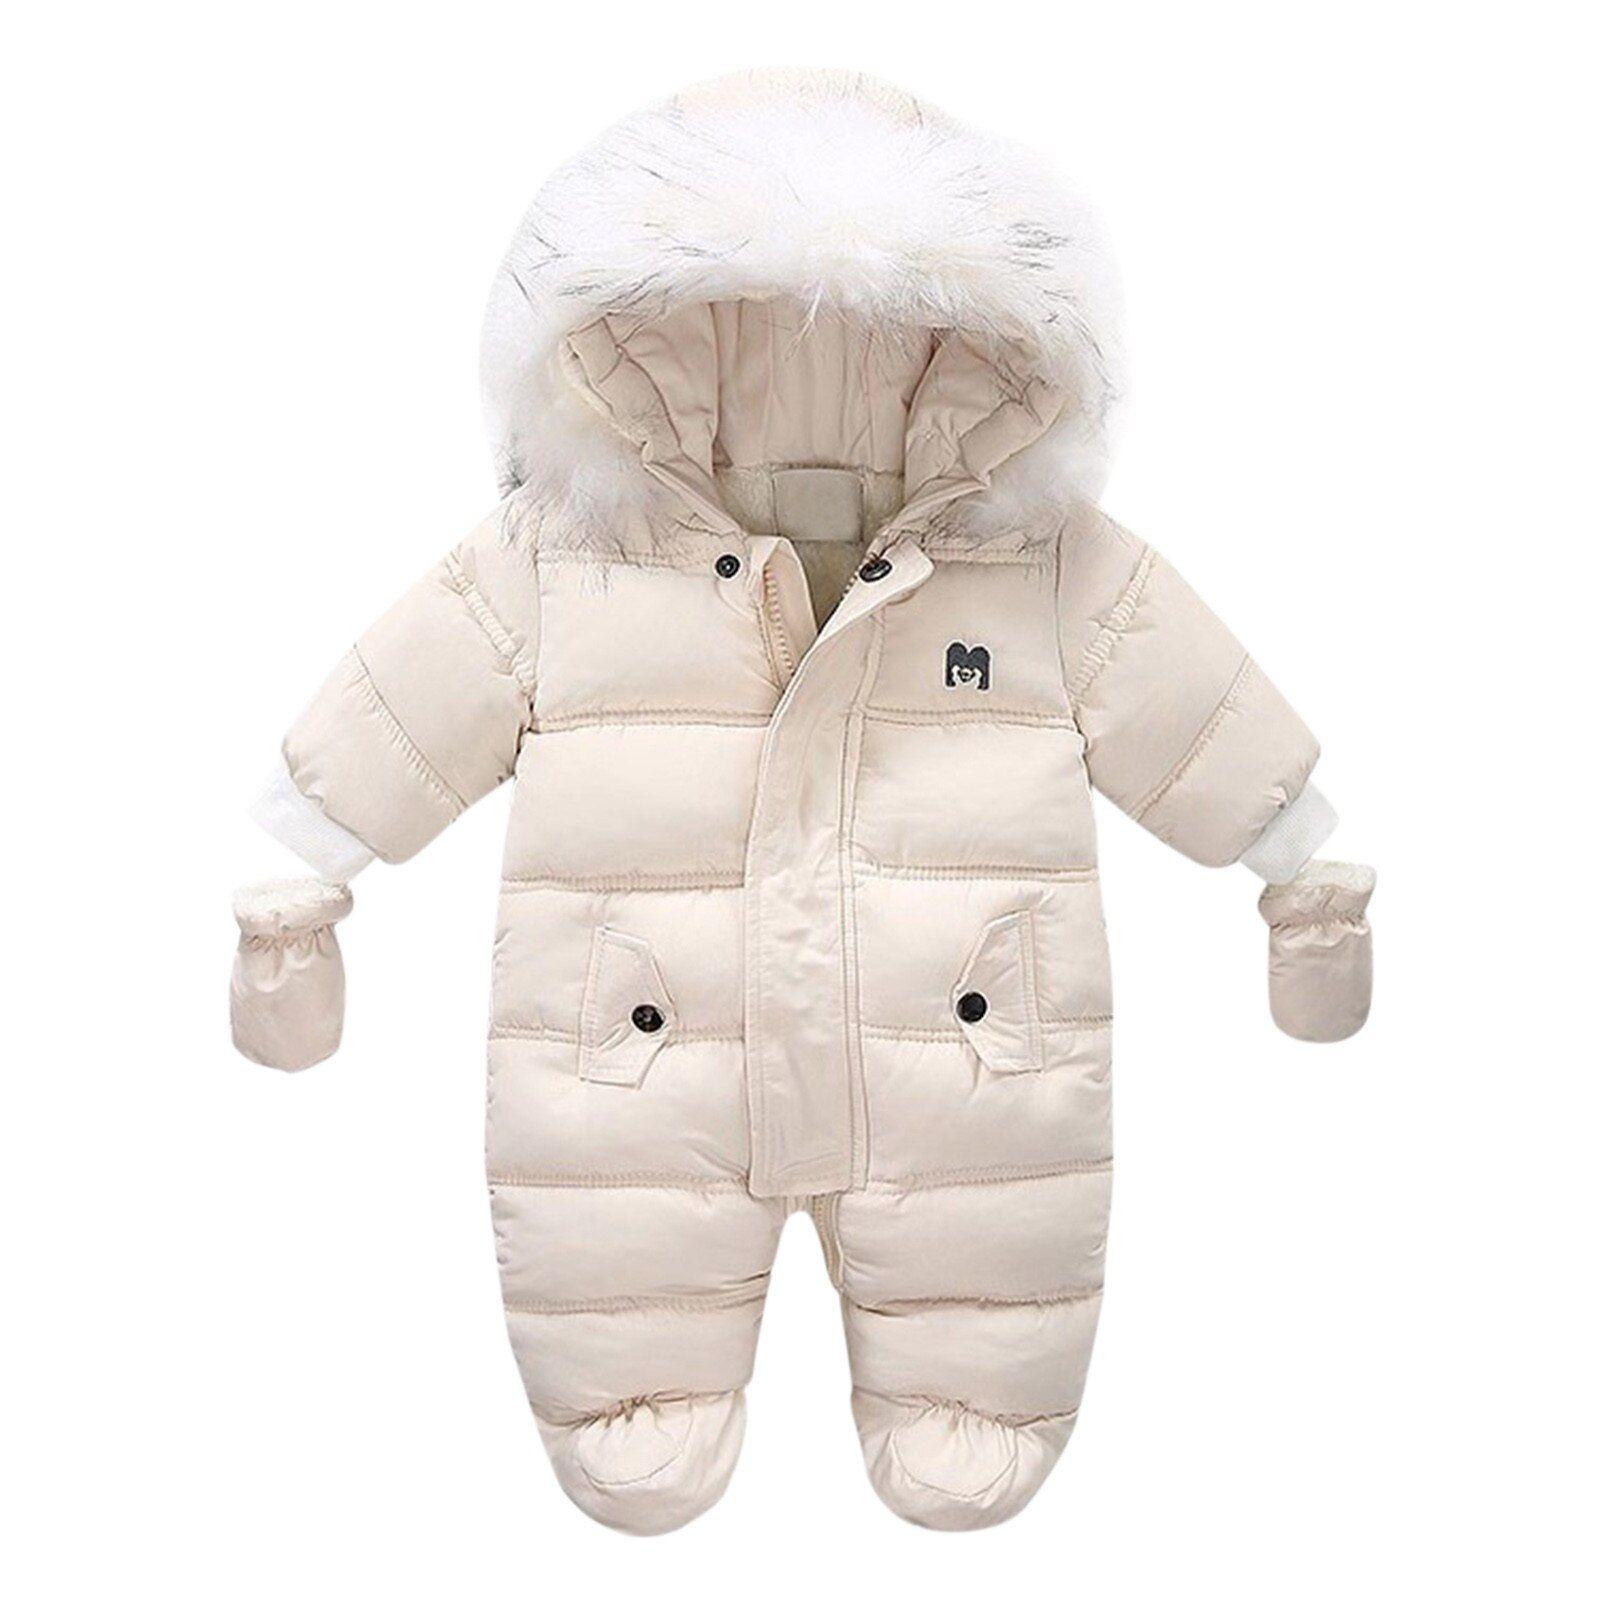 Combinaison épaisse et chaude pour nouveau-né, manteau pour bébé